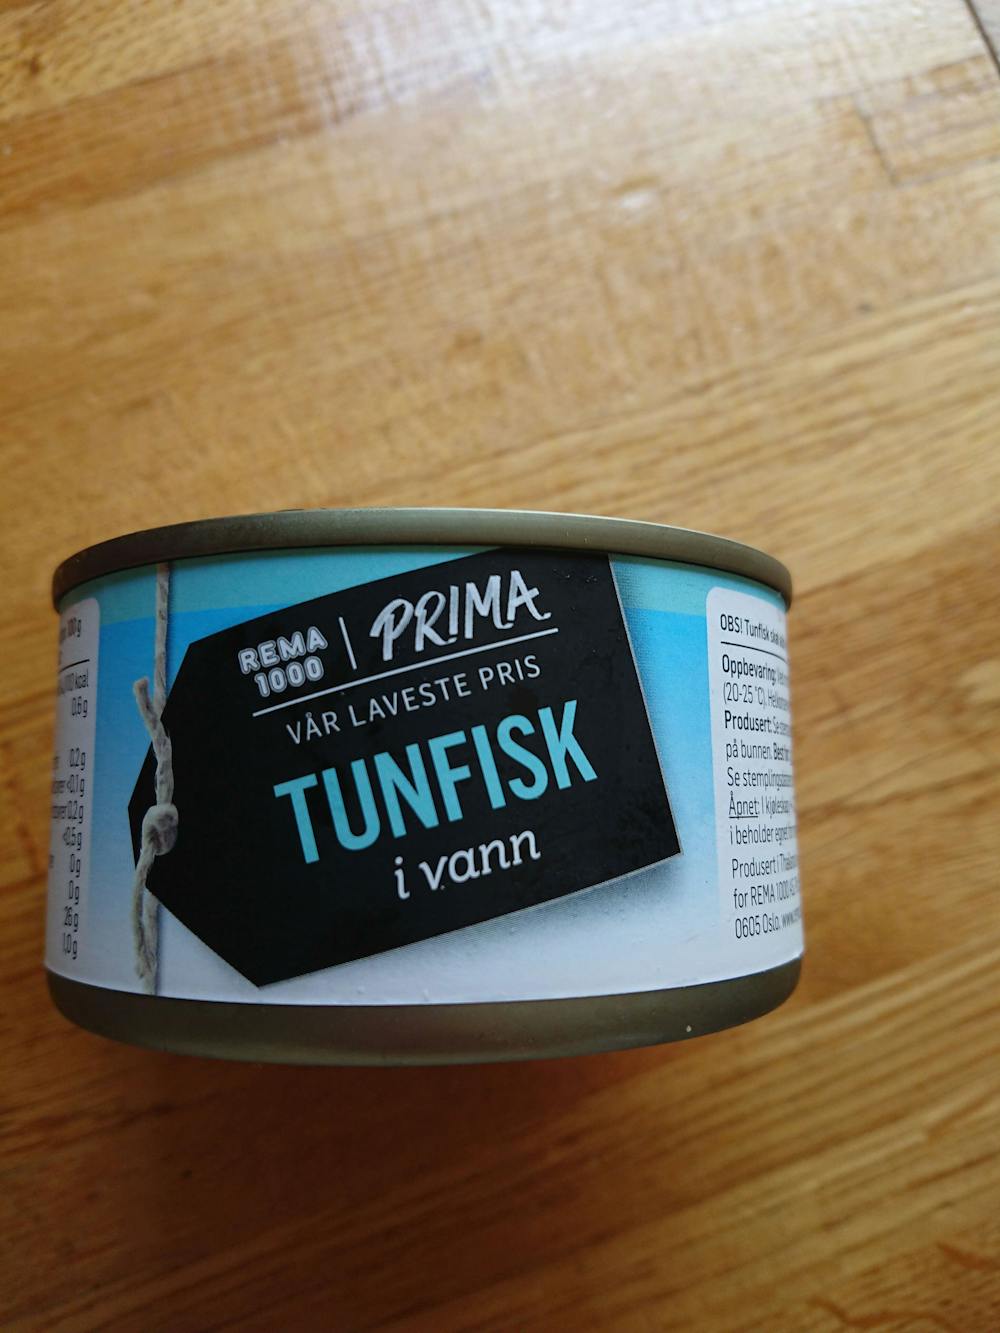 Tunfisk i vann, Rema 1000